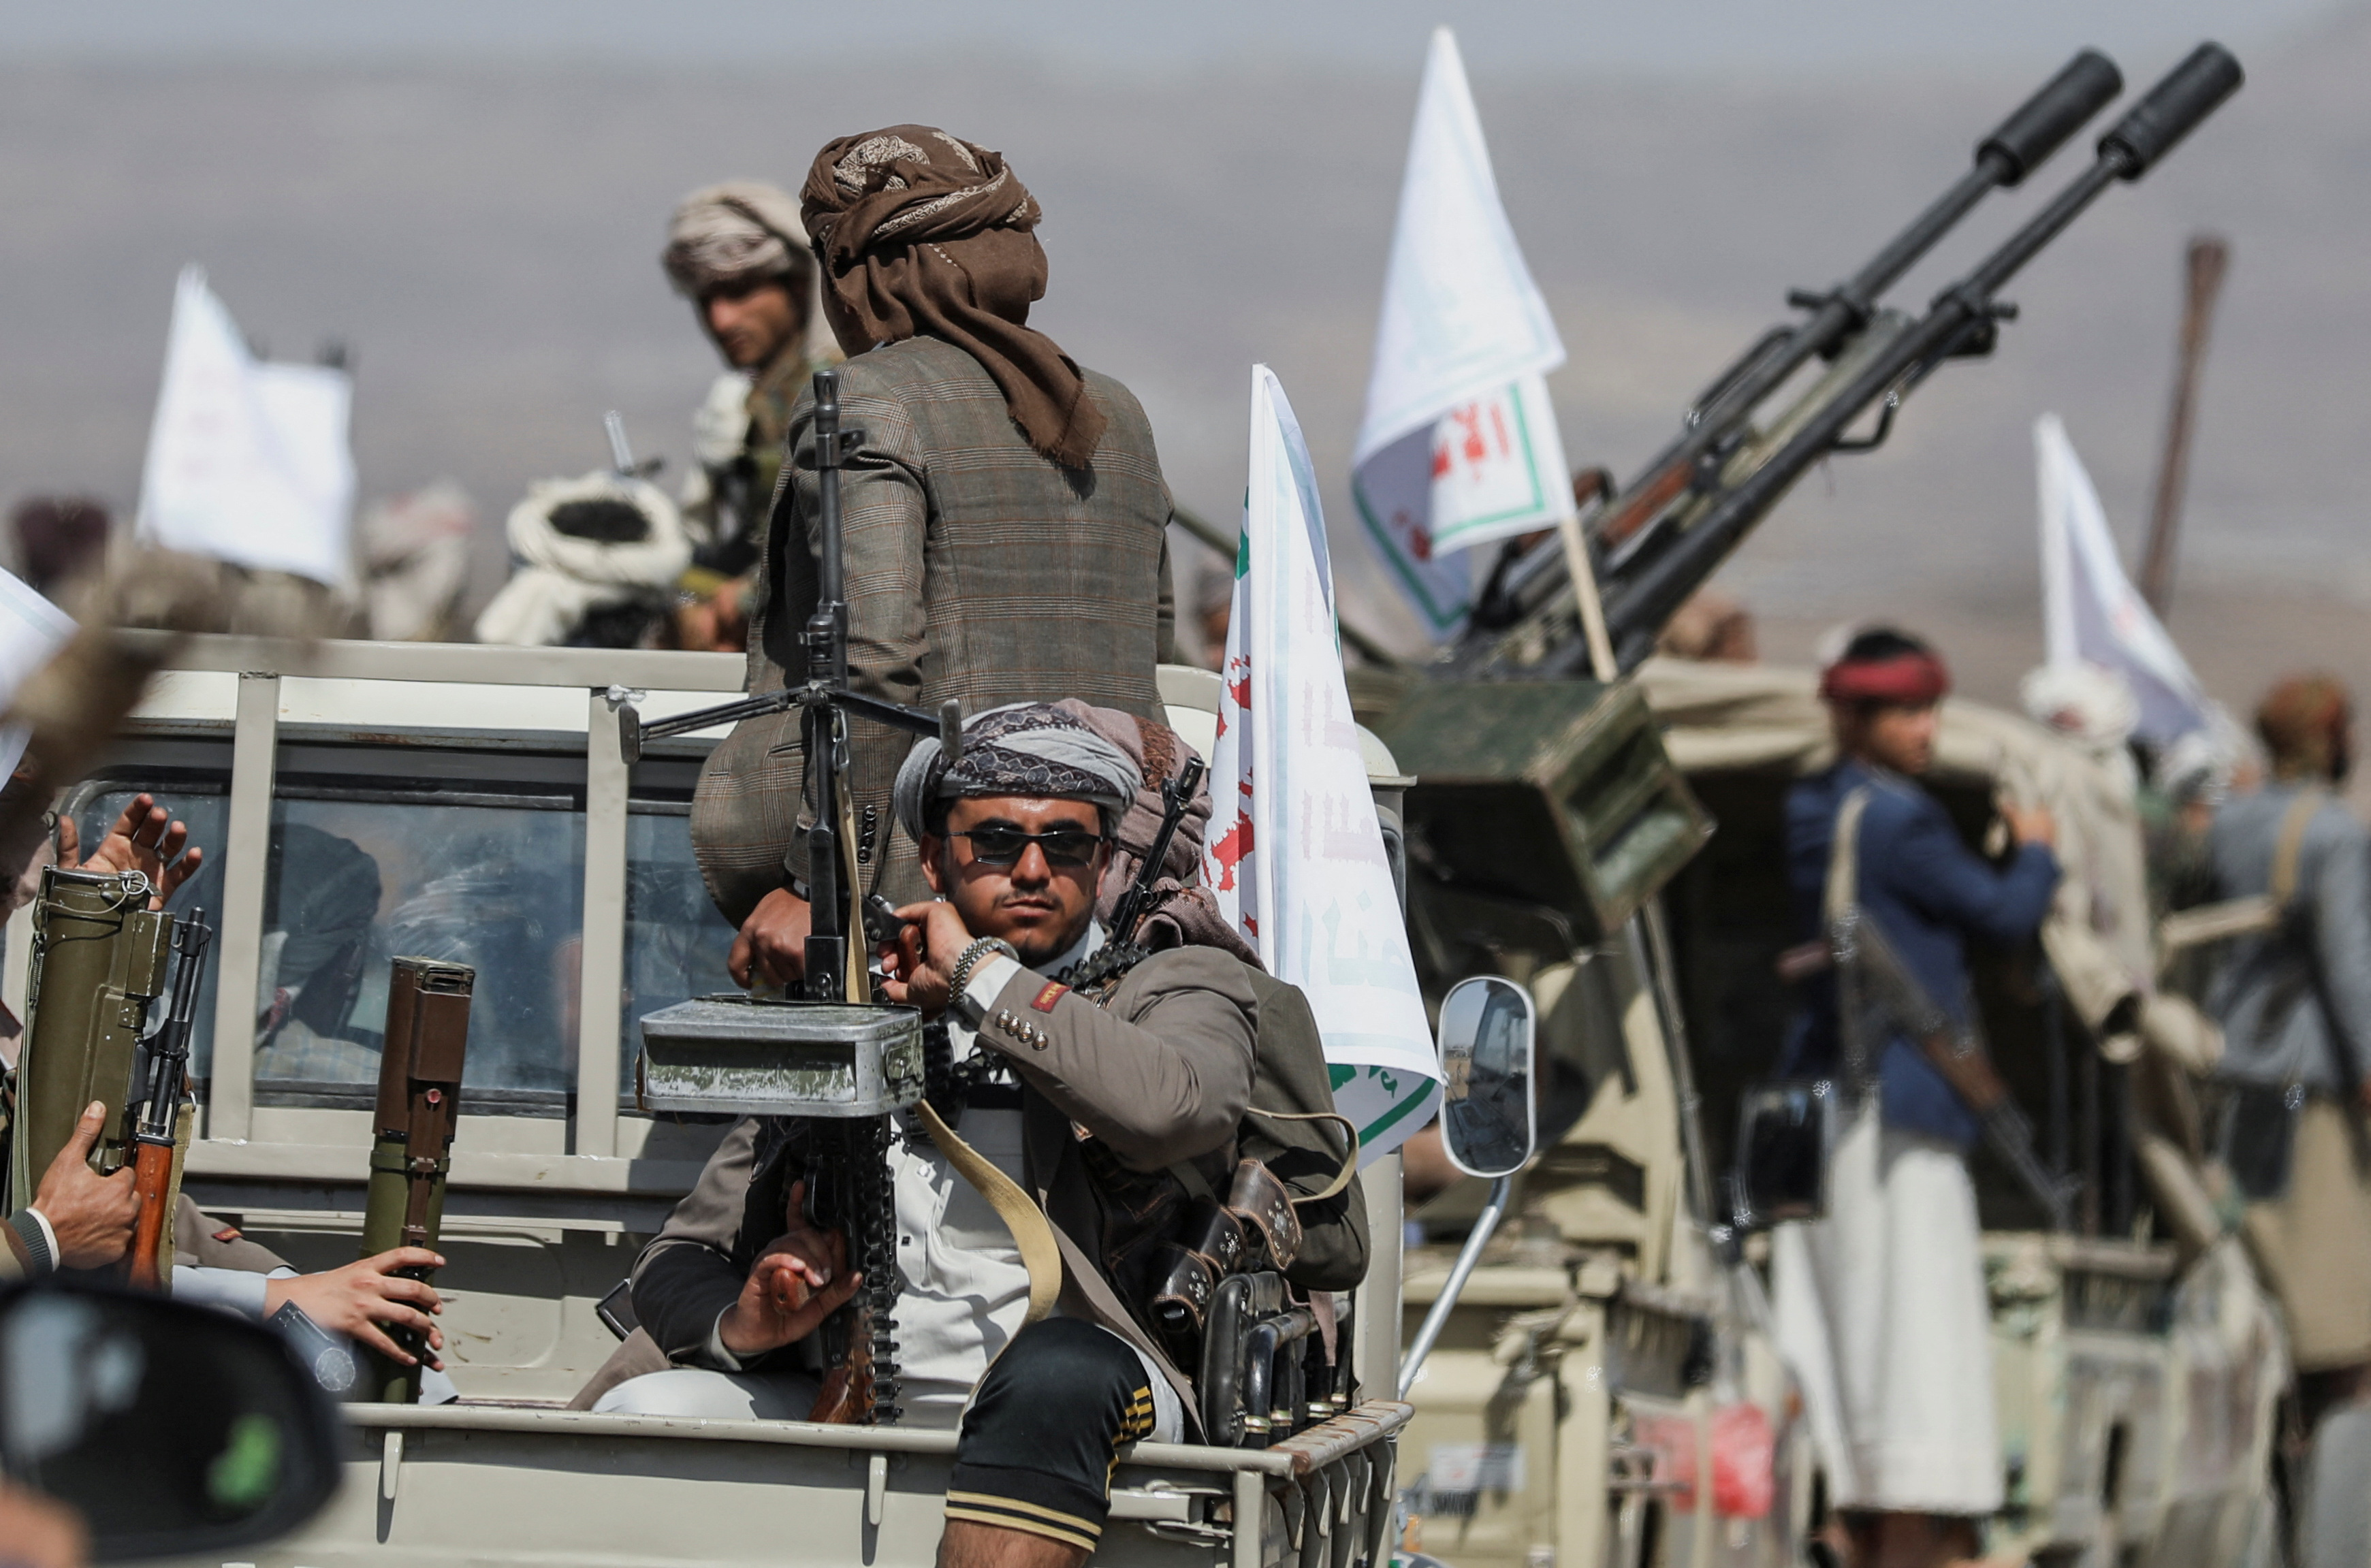 Mer Rouge : les forces alliées déjouent une attaque à grande échelle des Houthis contre des bateaux commerciaux et militaires